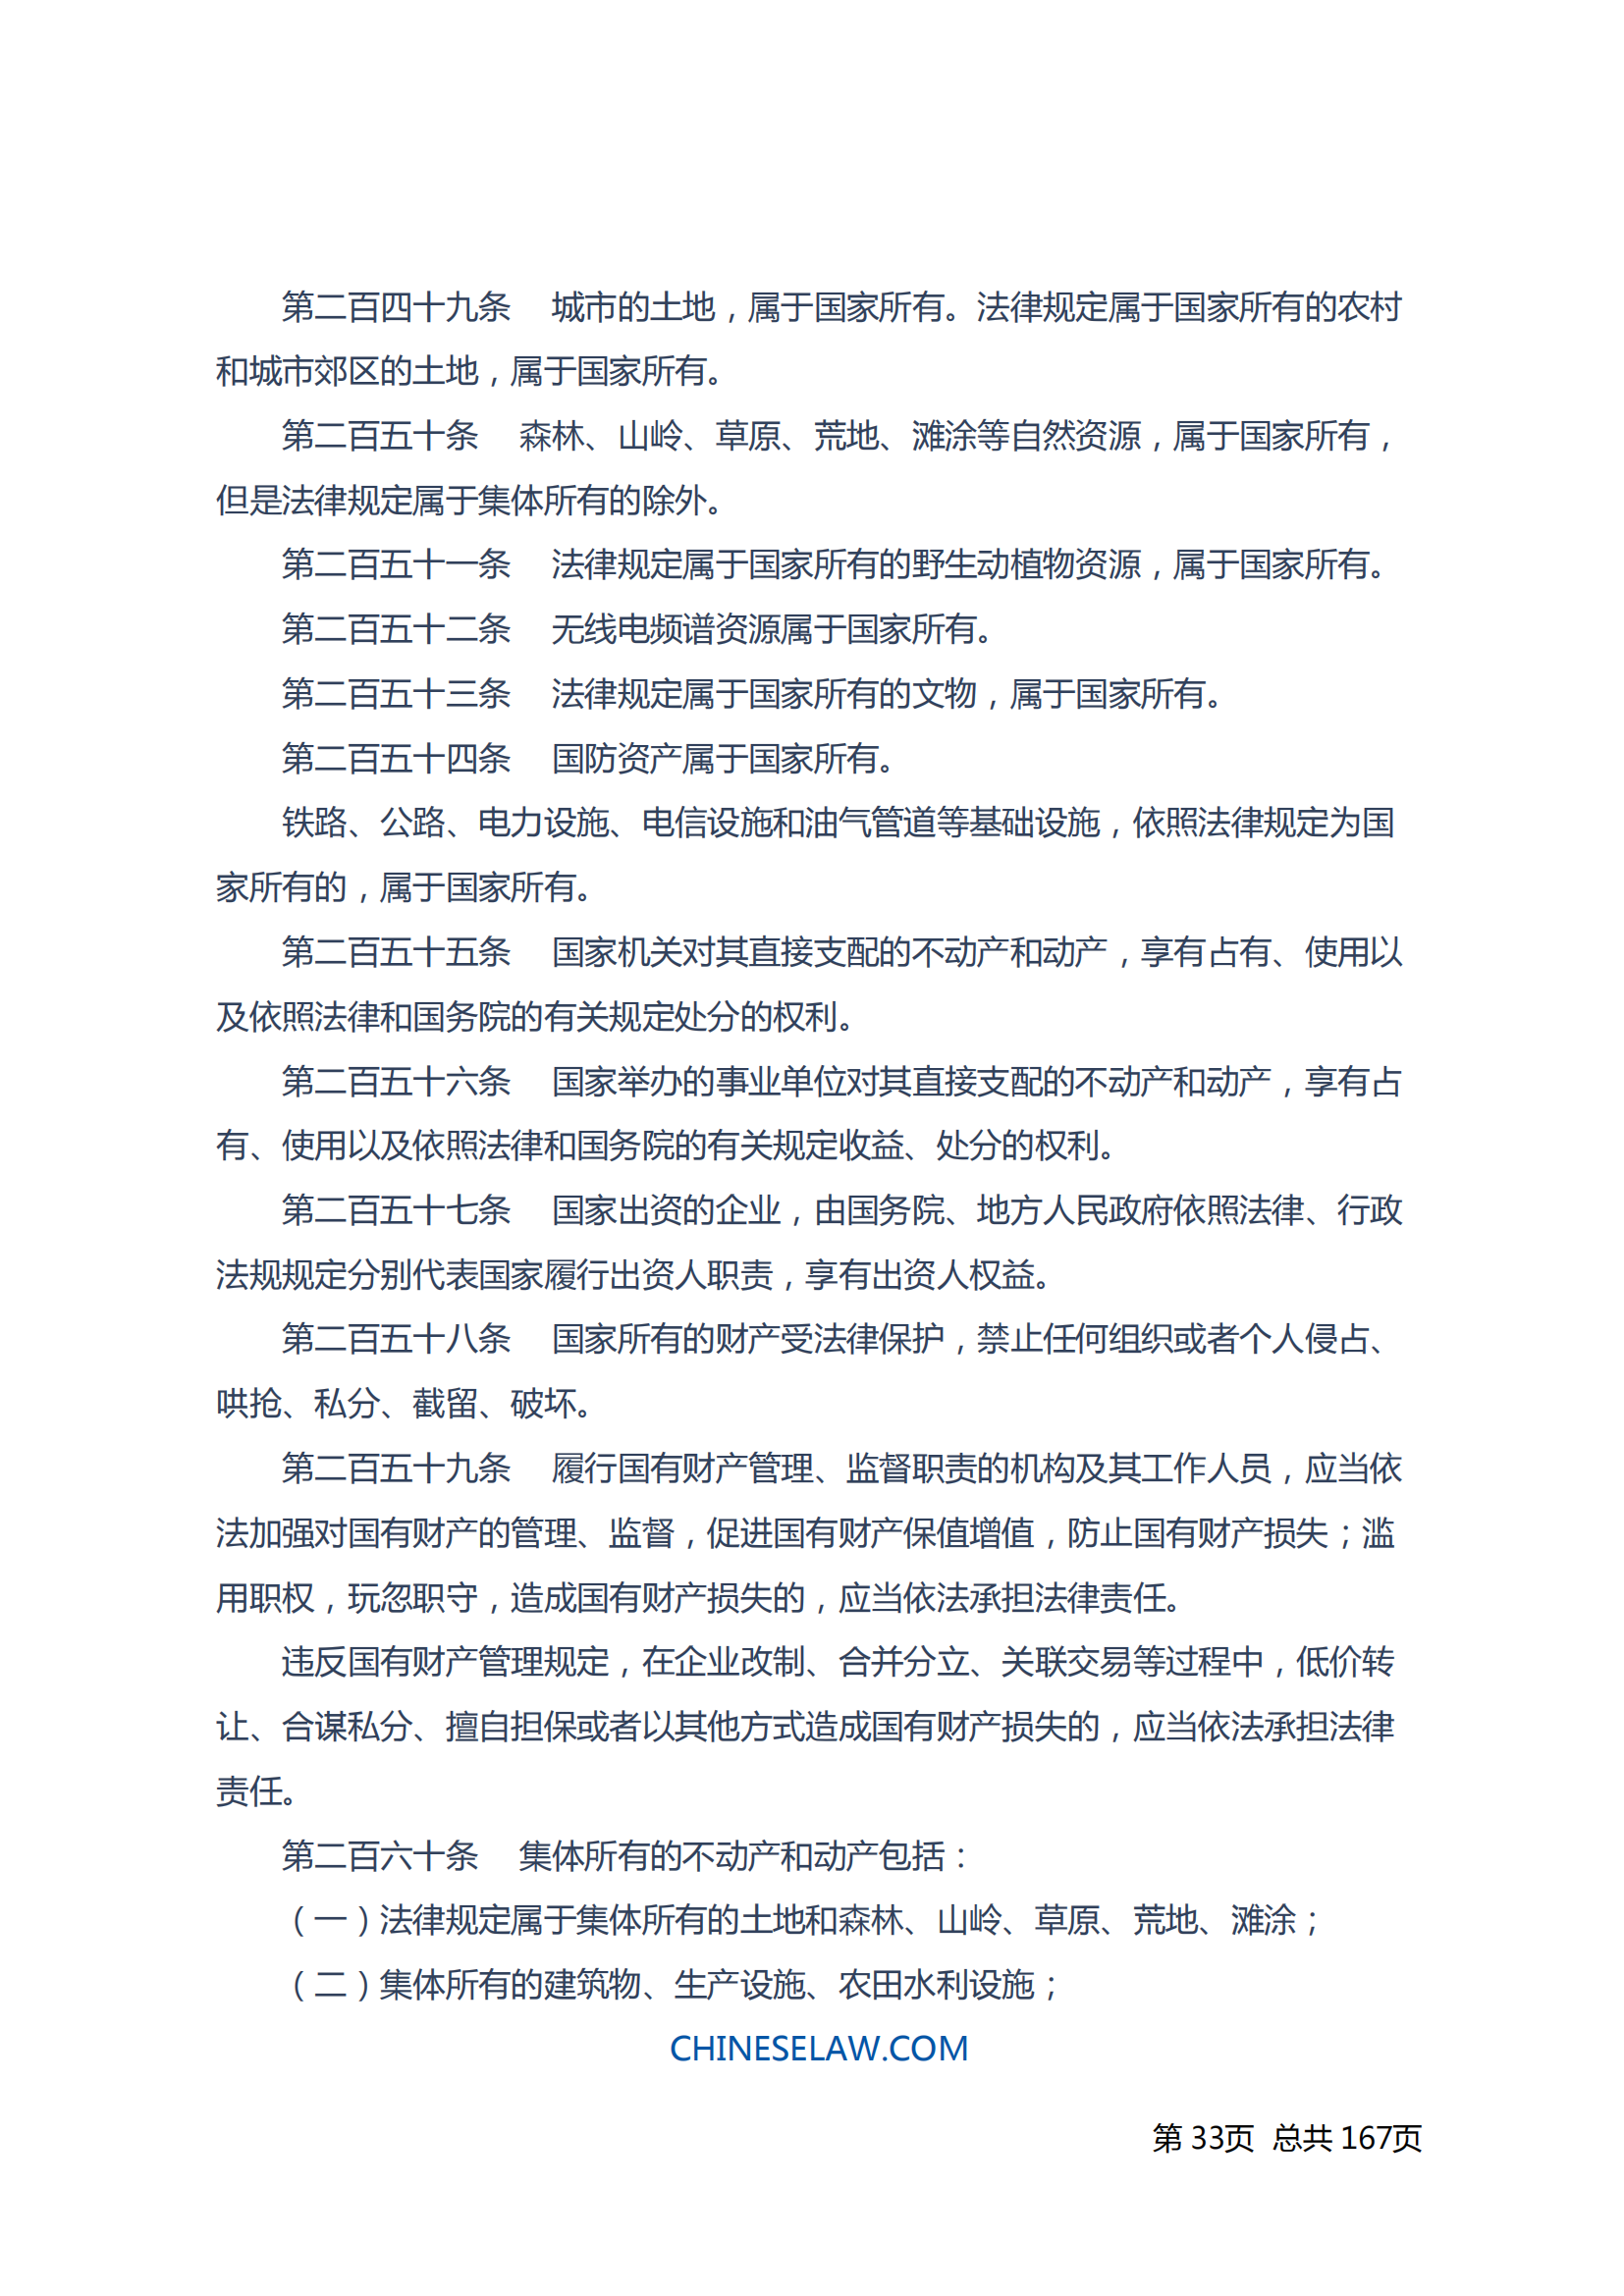 中华人民共和国民法典_32